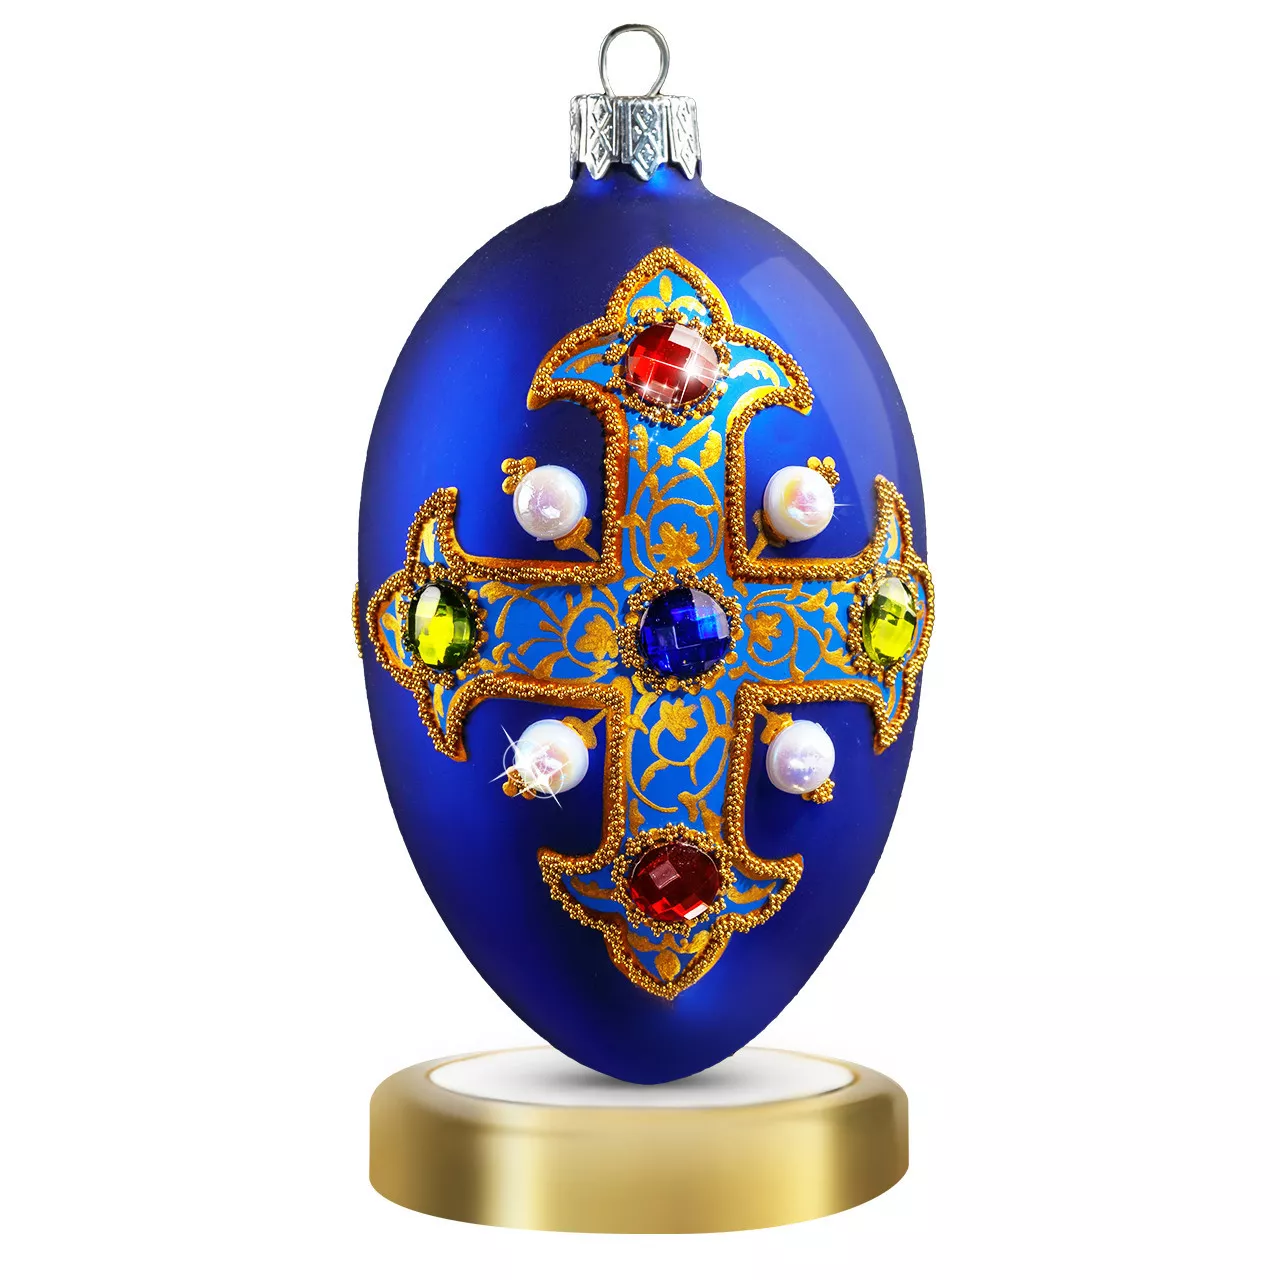 Игрушка новогодняя Crystal Christmas Royal Emblem Blue, размер 12х6 см (CRE002) - Фото nav 1